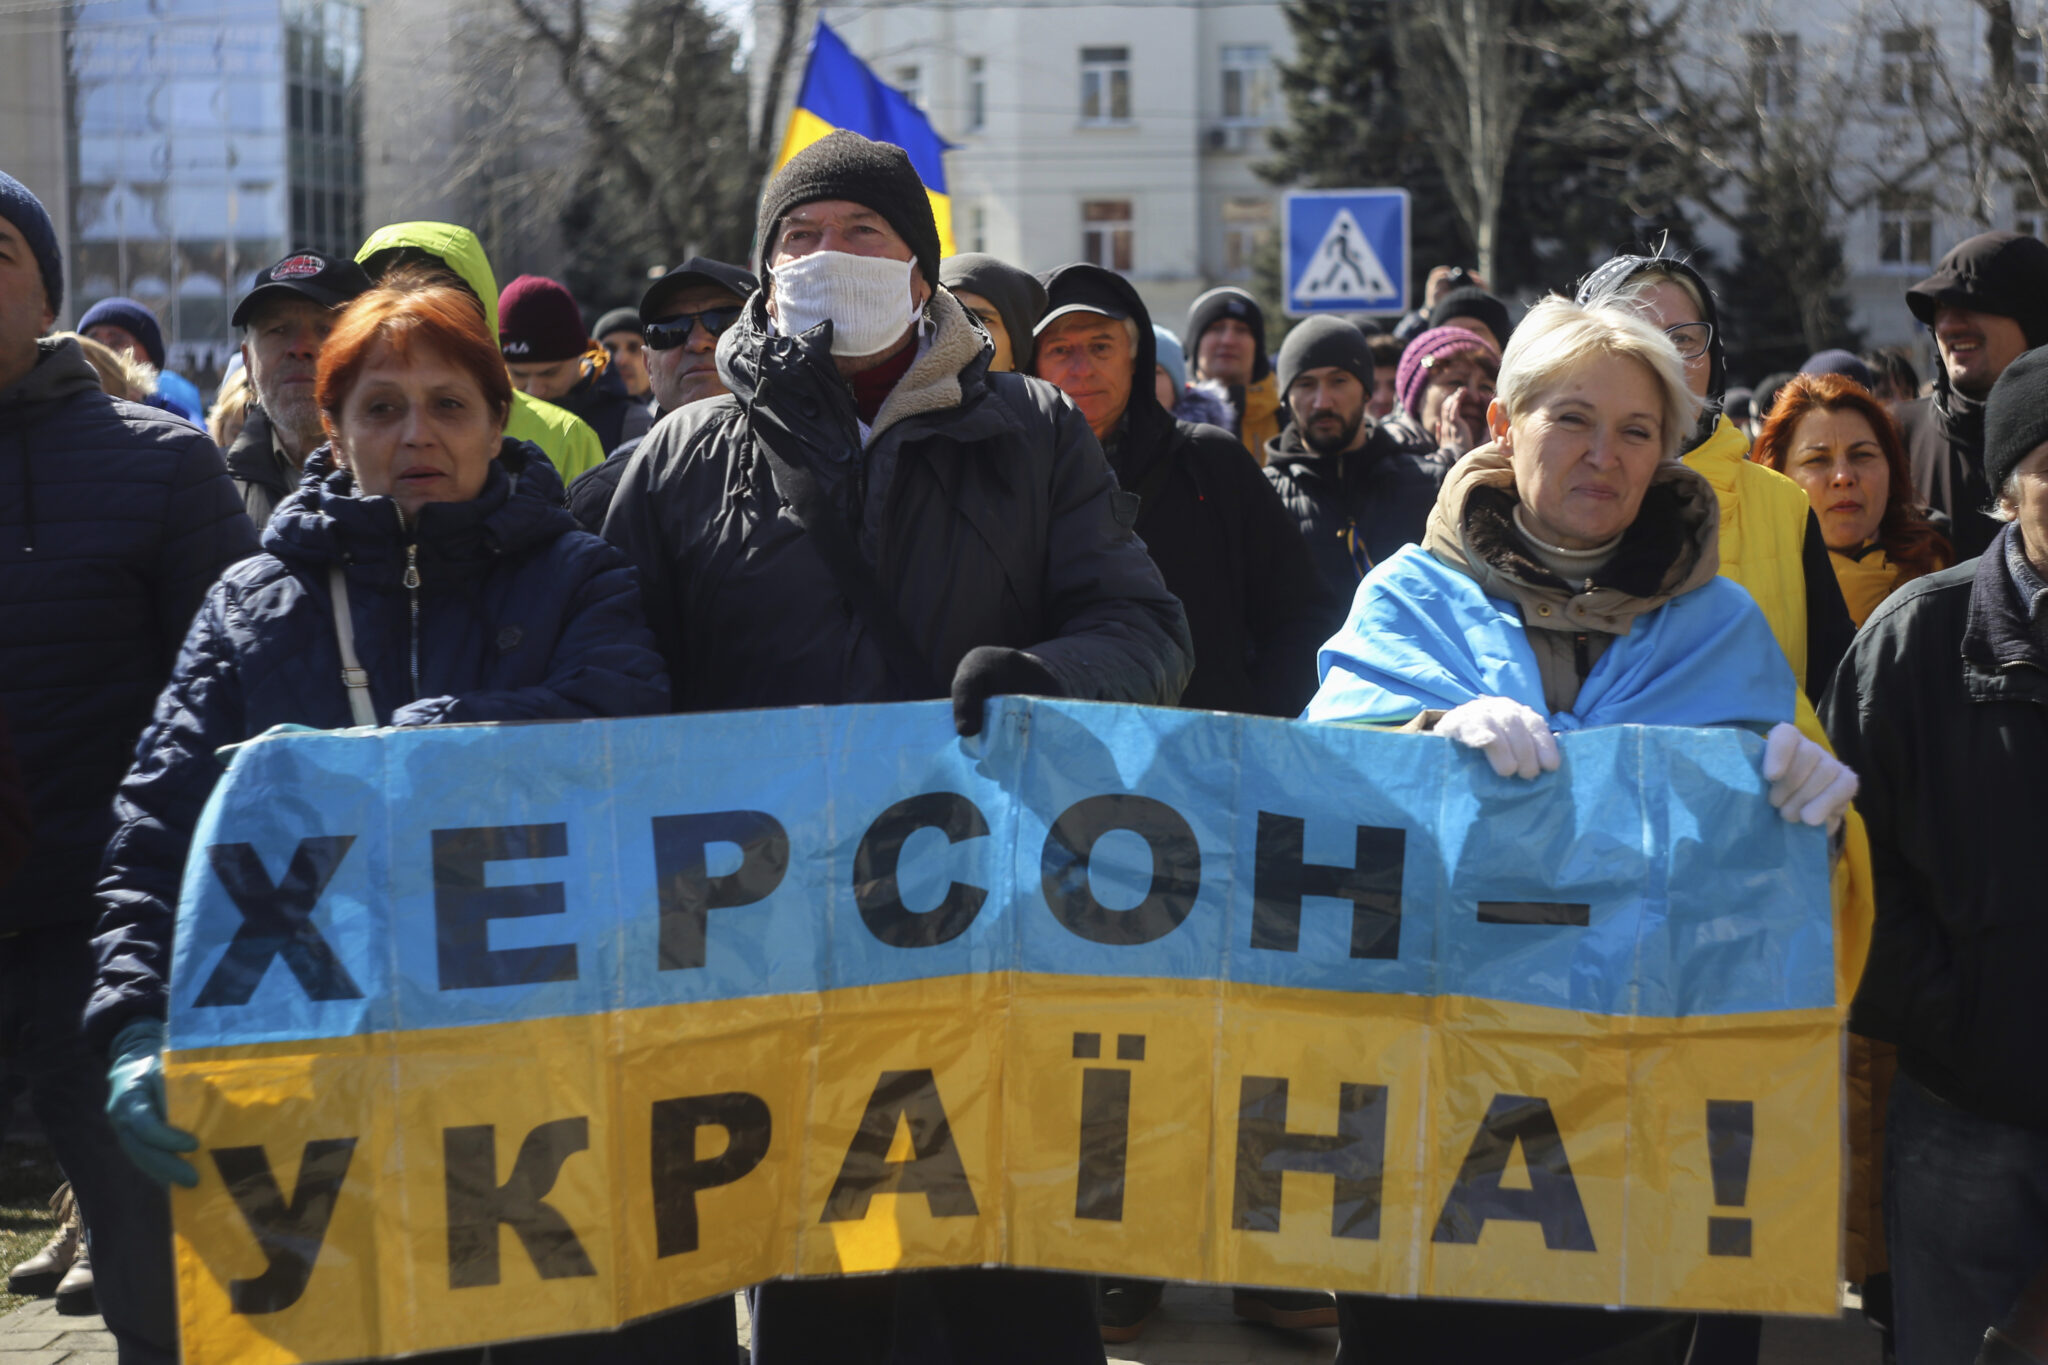 Проукраинская акция протеста в Херсоне 20 марта. Фото Olexandr Chornyi/AP photo/Scanpix/Leta.